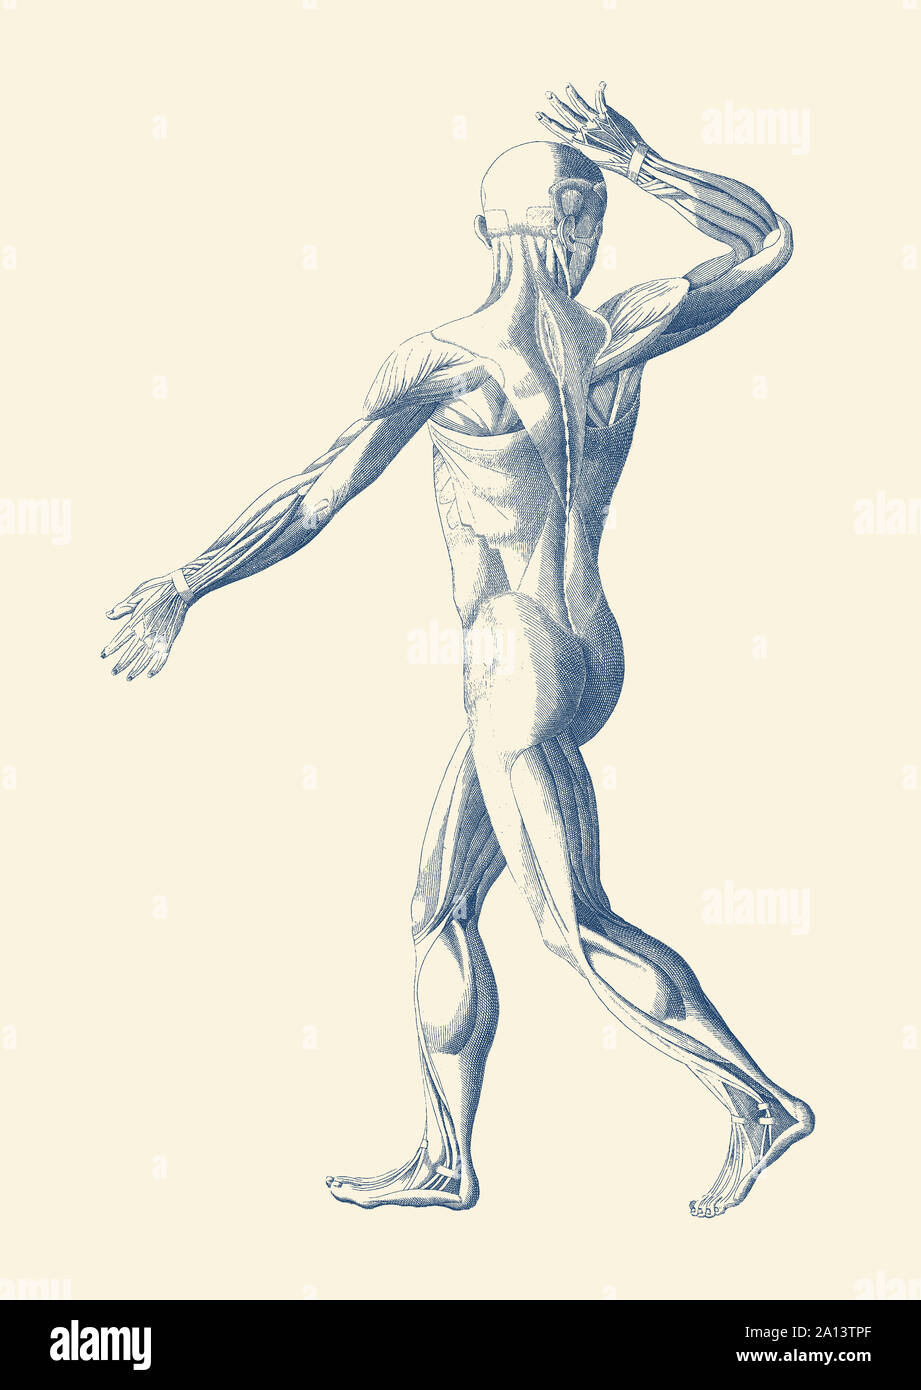 Горяев поясница. Анатомия шагающего человека. Мышцы рисунок. Мускулатура рисунок. Мускулы рисунок акварель.